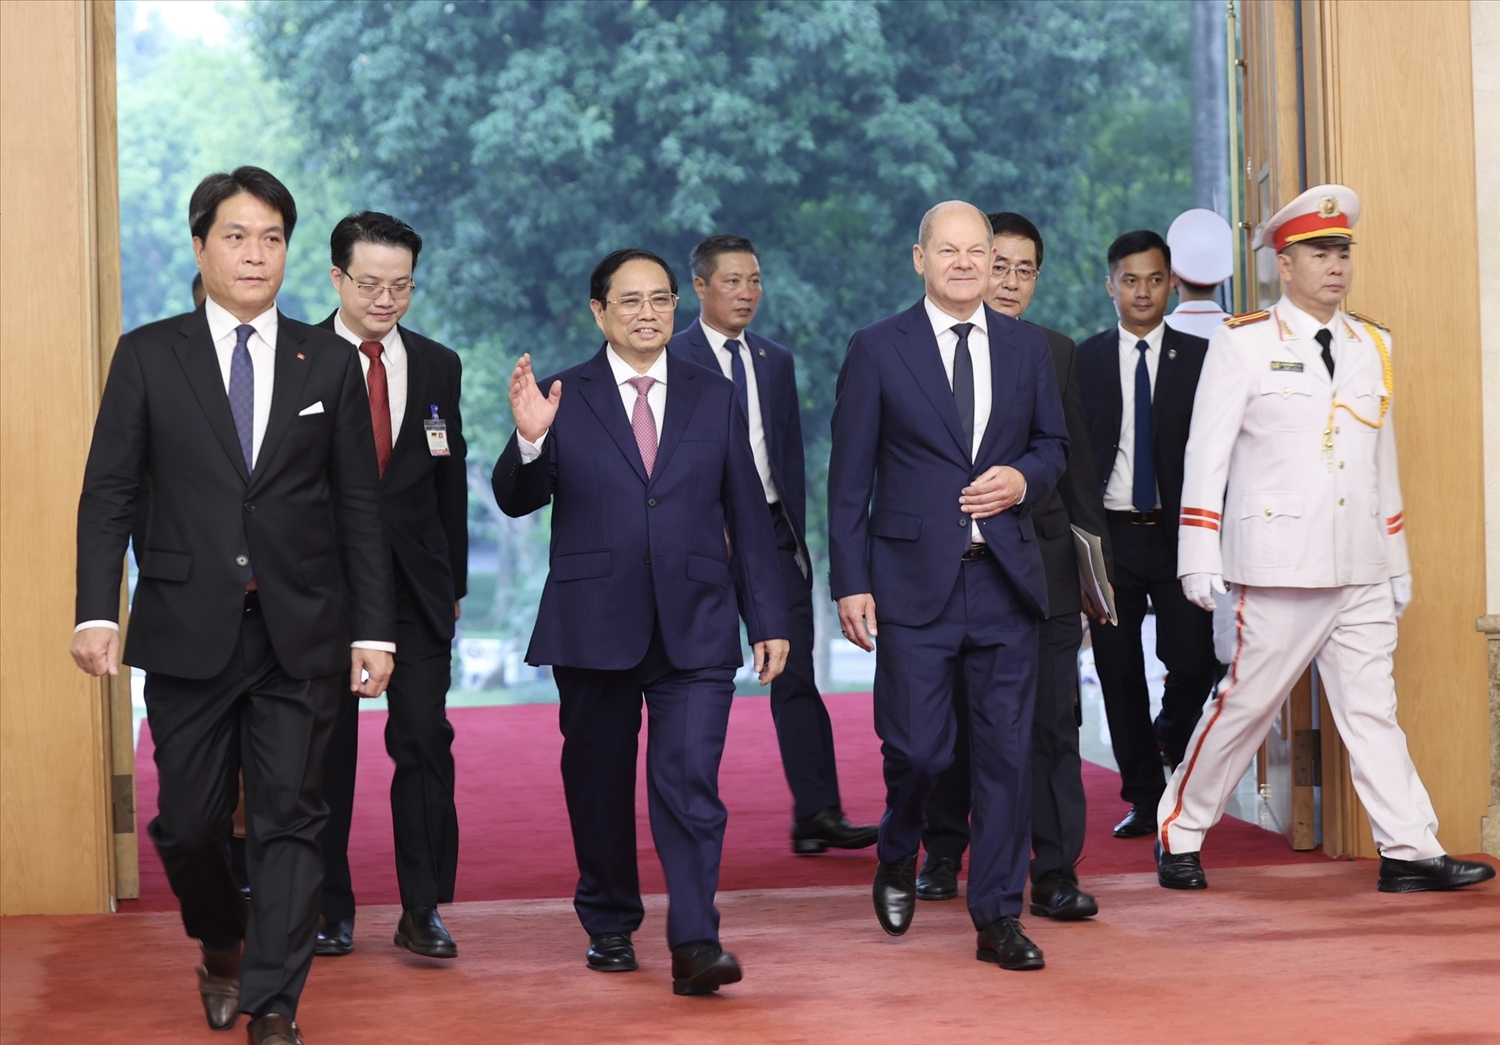 Thủ tướng Chính phủ Phạm Minh Chính và Thủ tướng Olaf Scholz tiến vào phòng hội đàm - Ảnh: VGP/Nhật Bắc